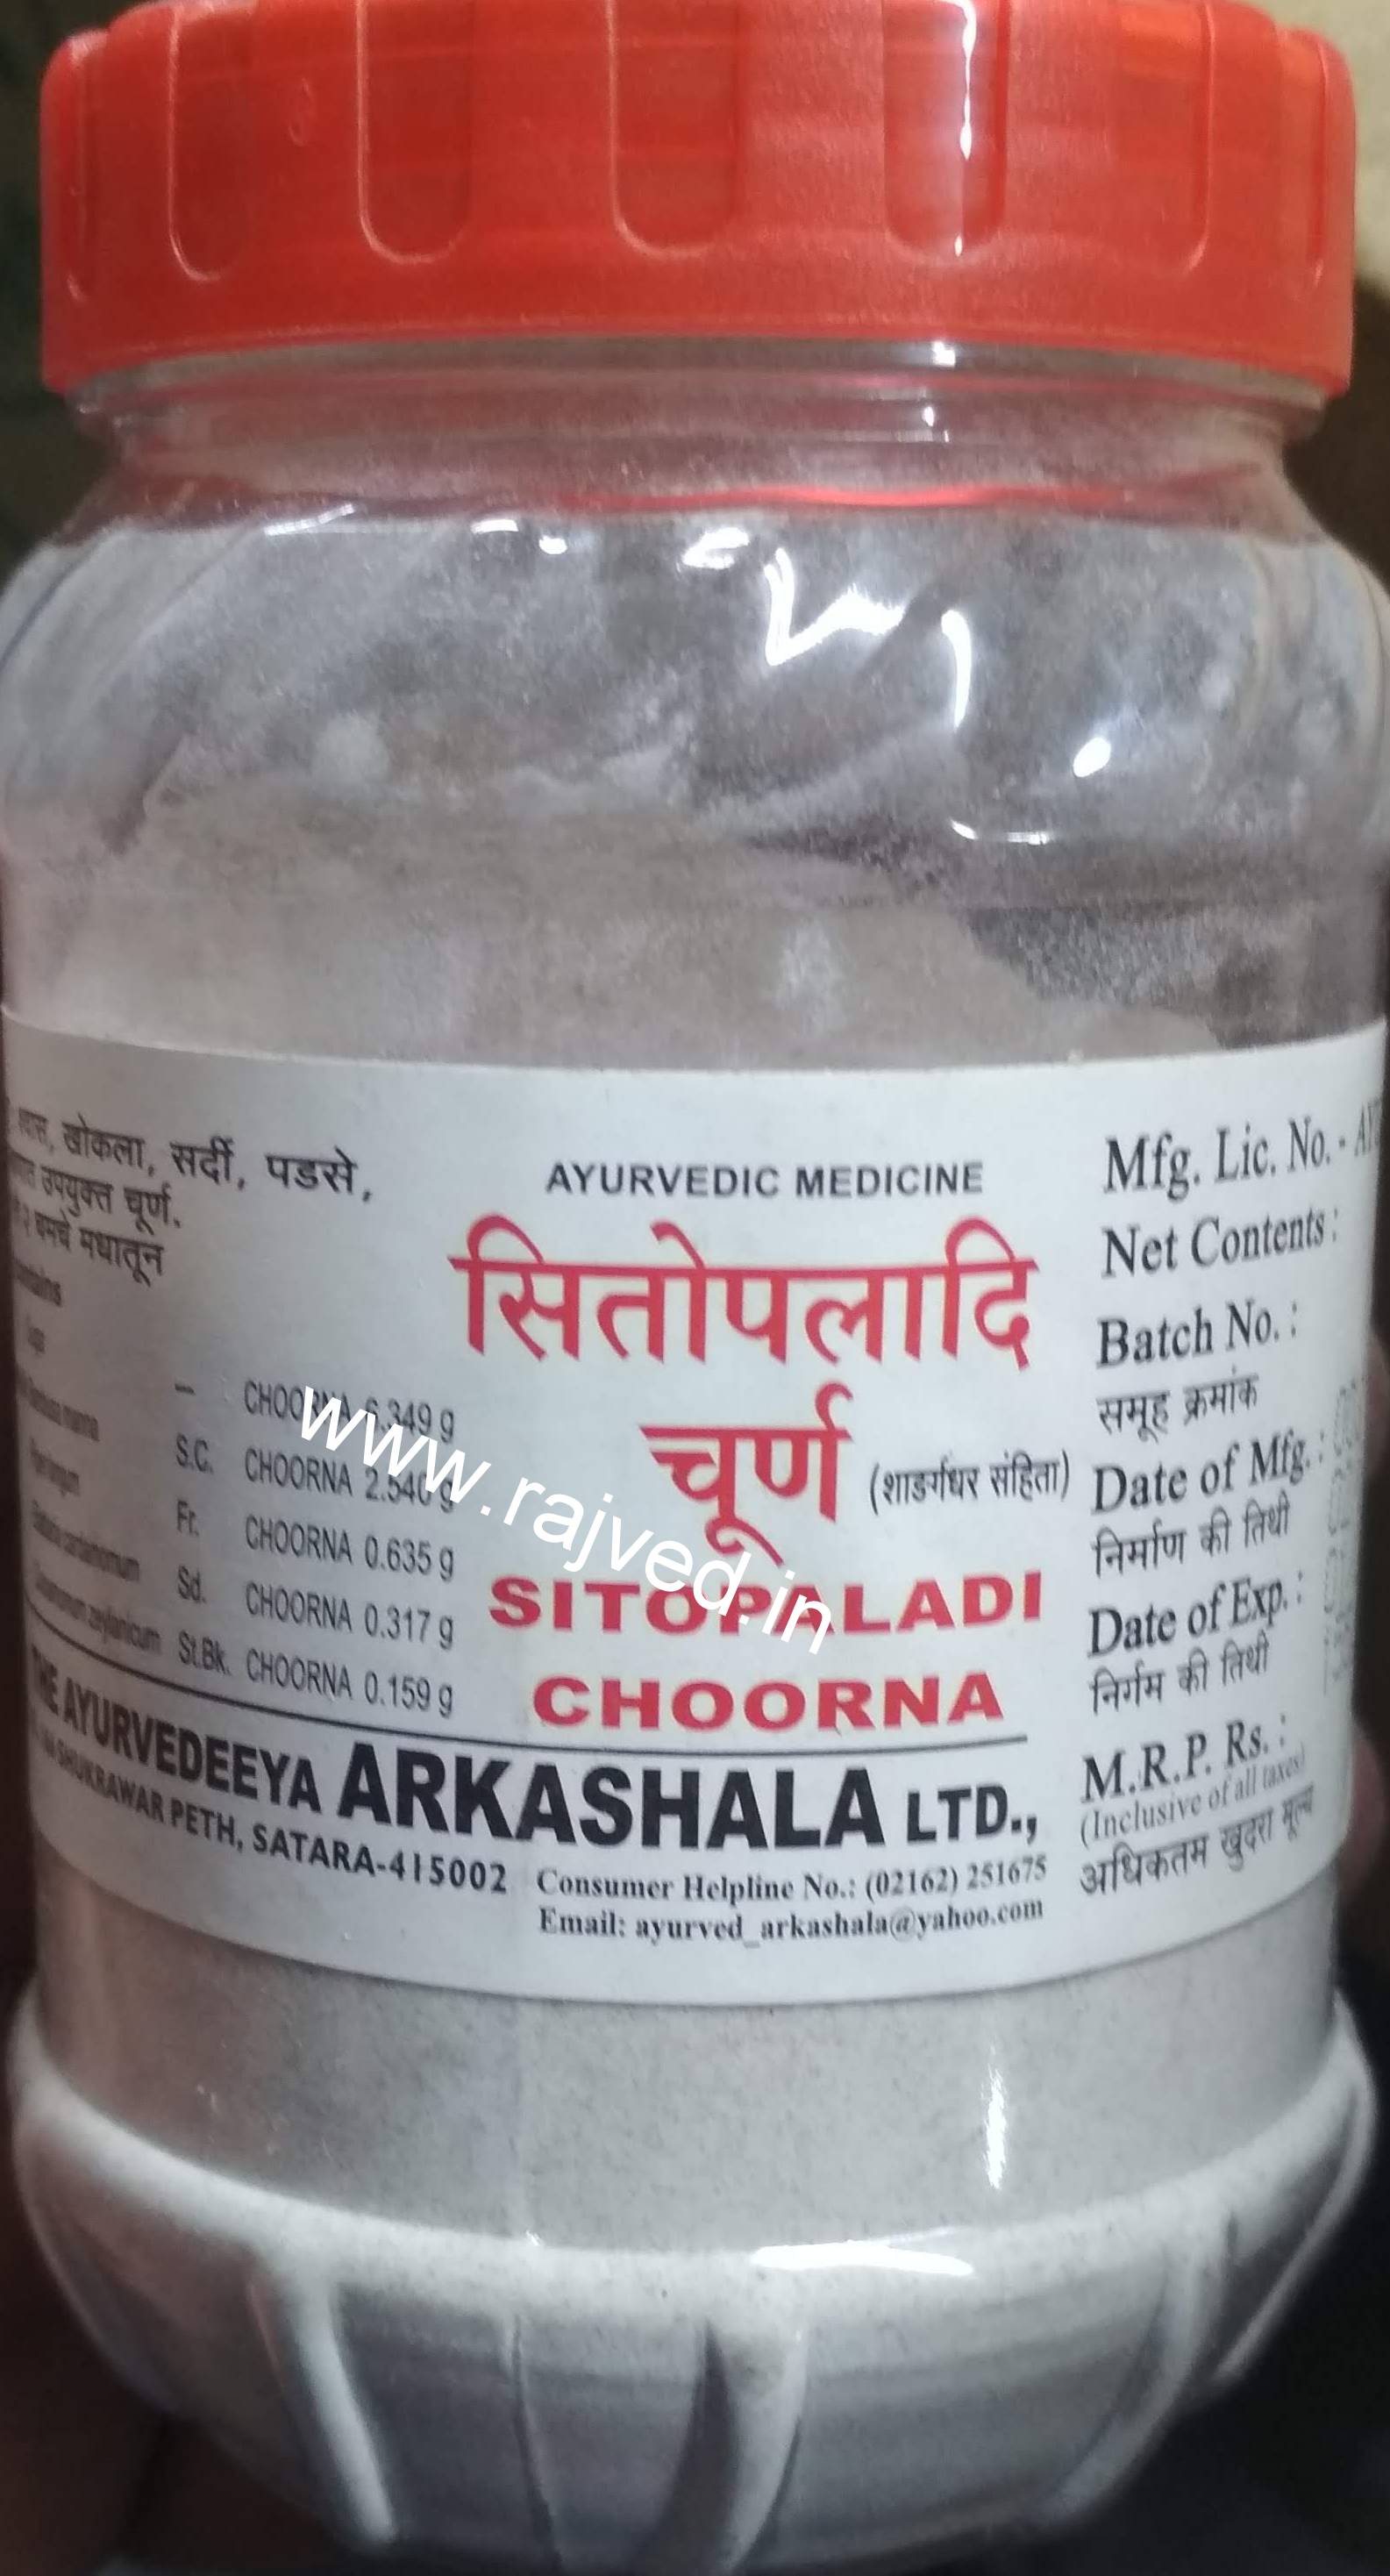 sitopaladi choorna 100 gm upto 15% off the ayurveda arkashala